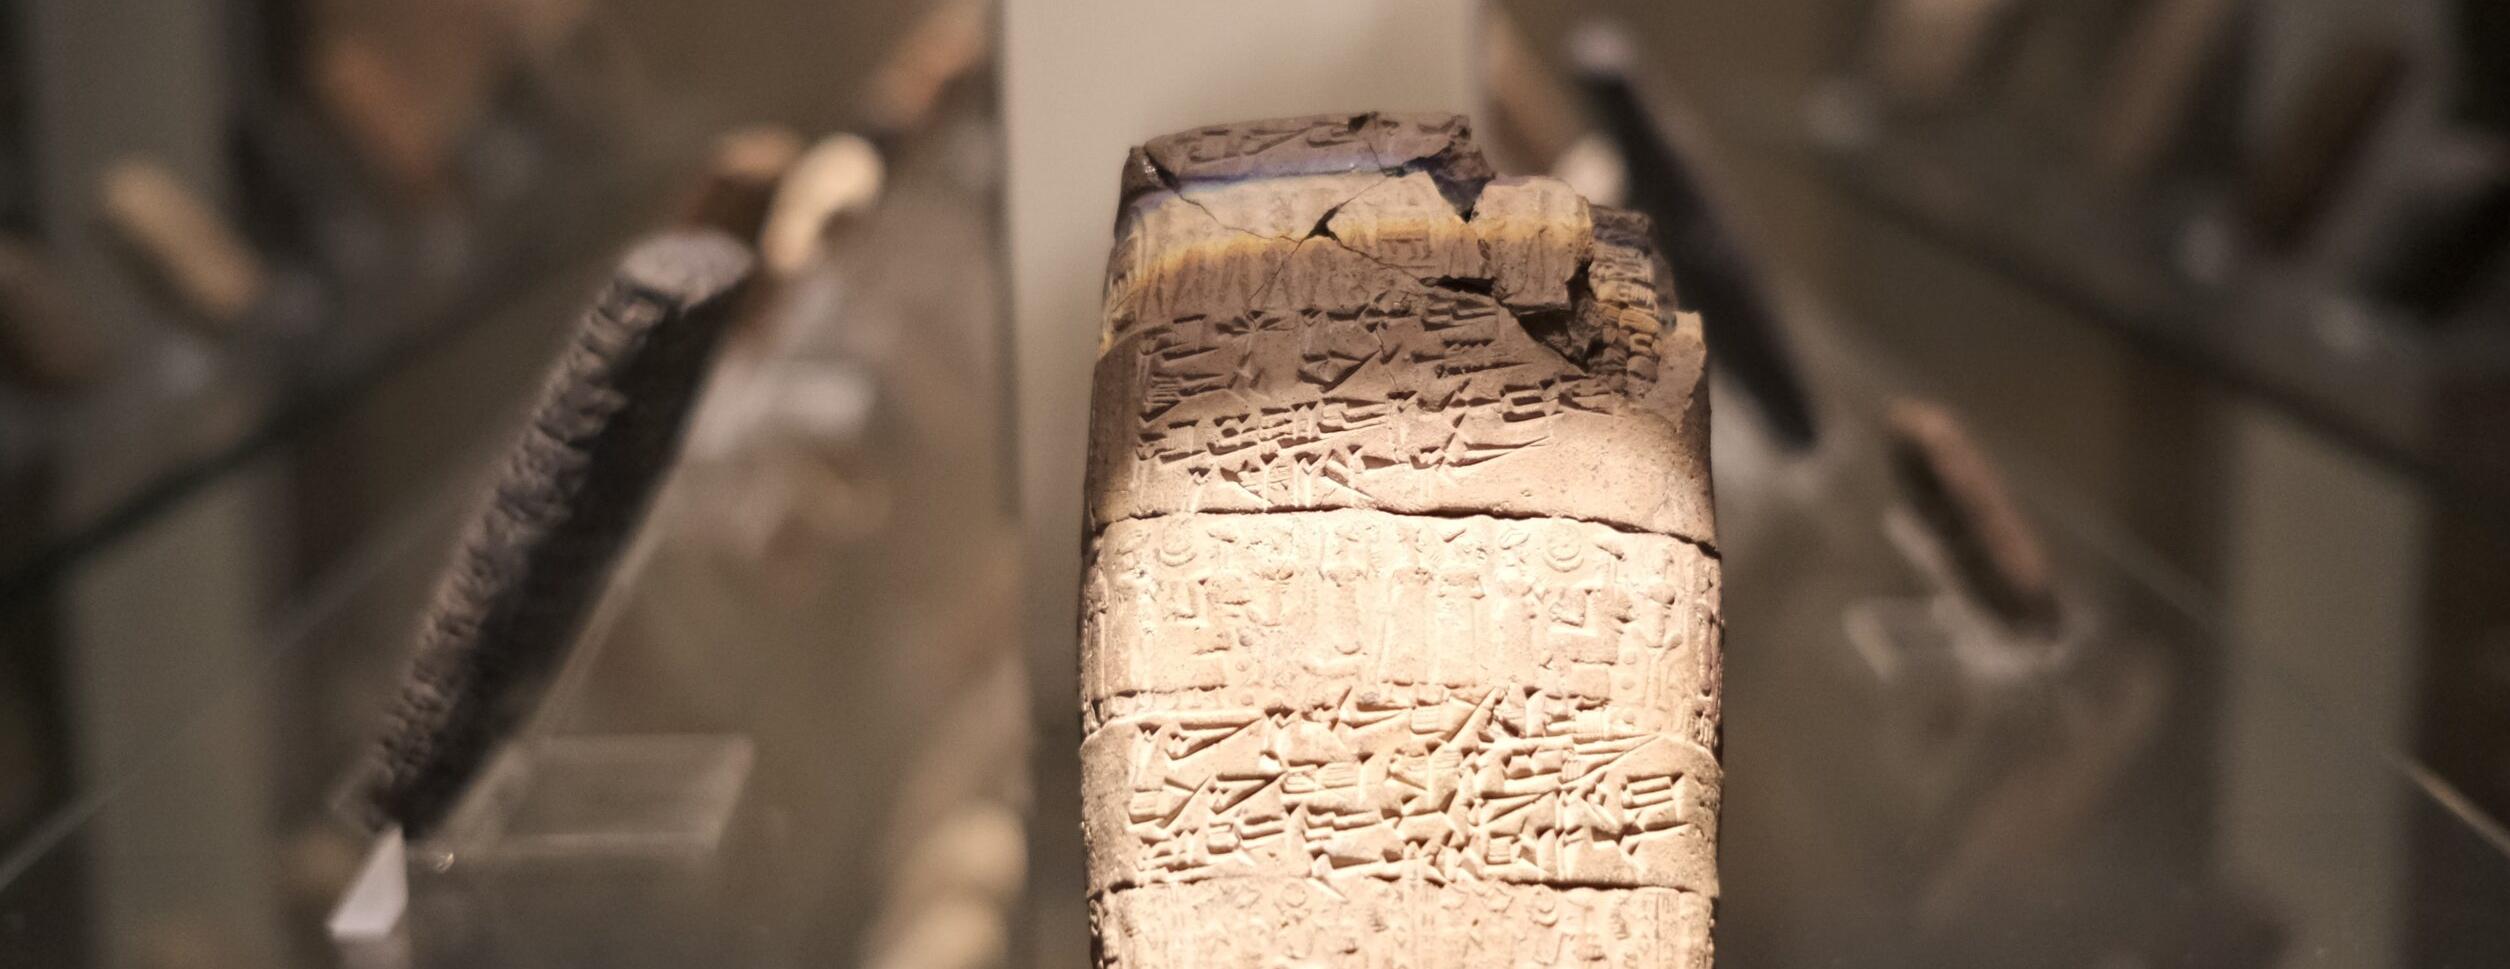 4 bin yıllık tabletler Türkçe’ye çevriliyor